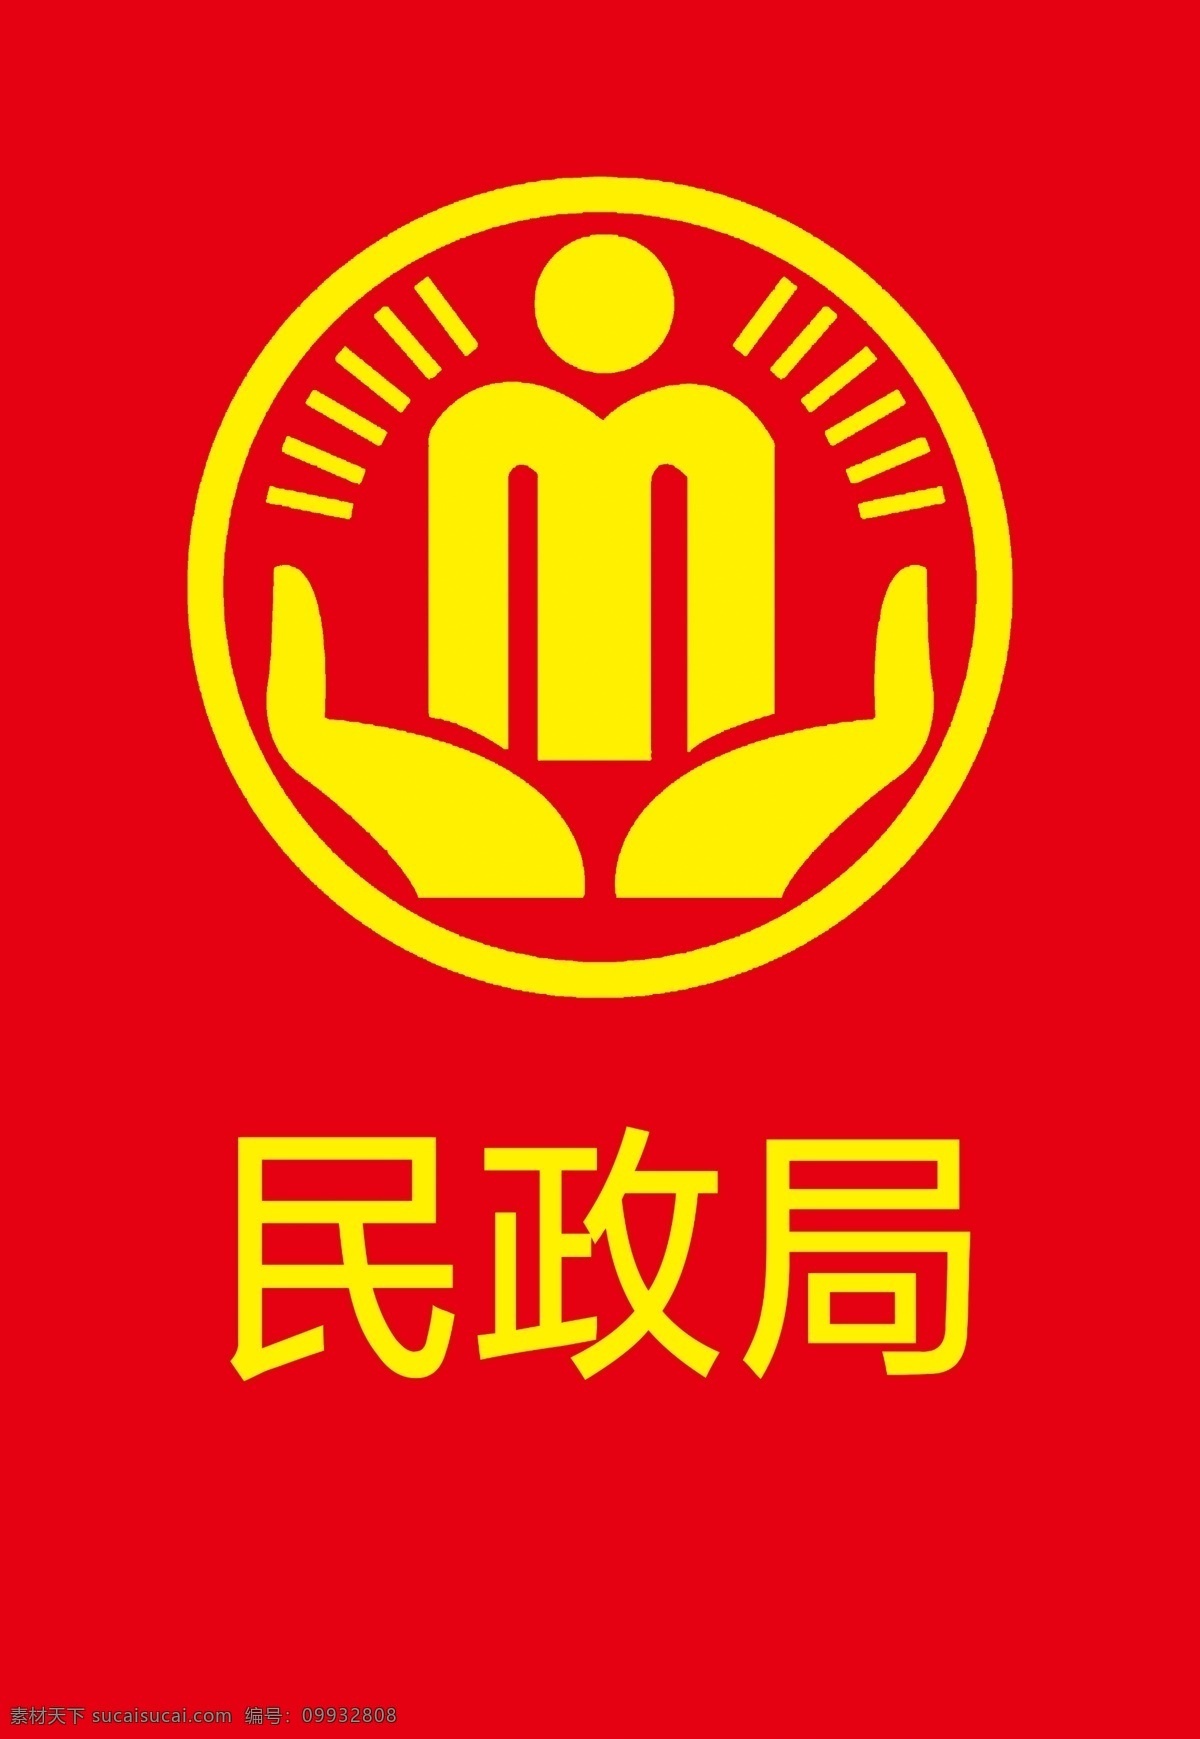 民政局标志 民政局 logo 标志